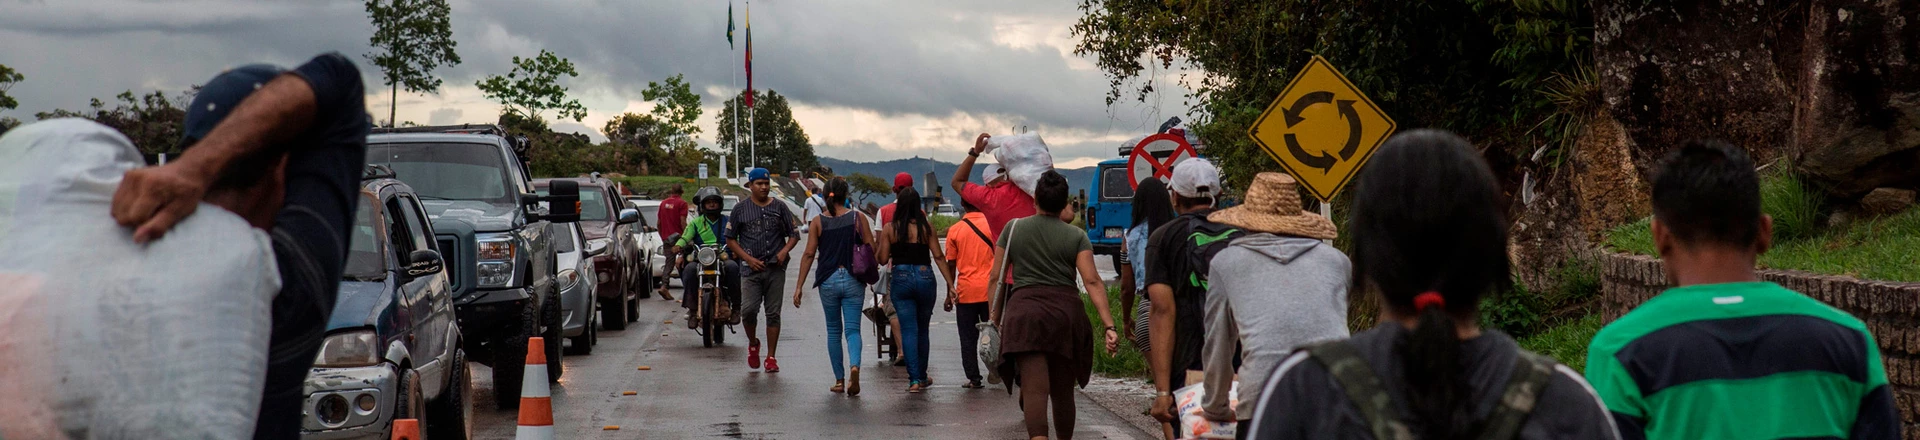 Mais de 3 milhões de venezuelanos já deixaram o país desde 2014 fugindo do governo de Nicolás Maduro. Ao menos 400 mil seguiram para o Brasil via Roraima.